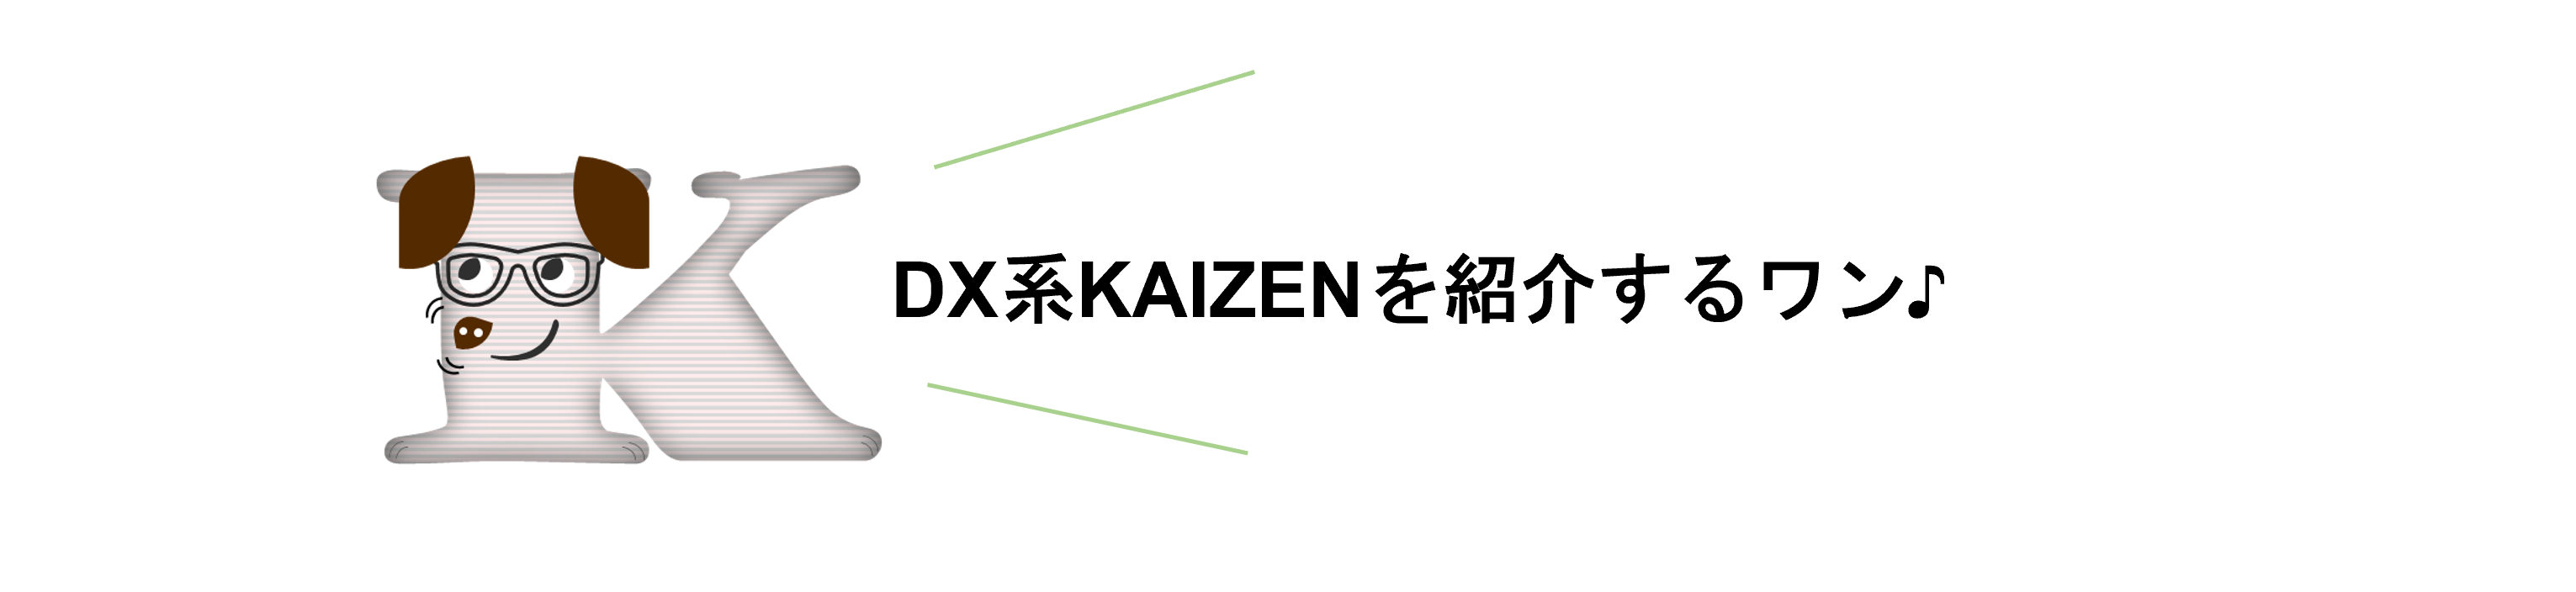 【KAIZEN】DX系KAIZENを紹介するワン♪.png